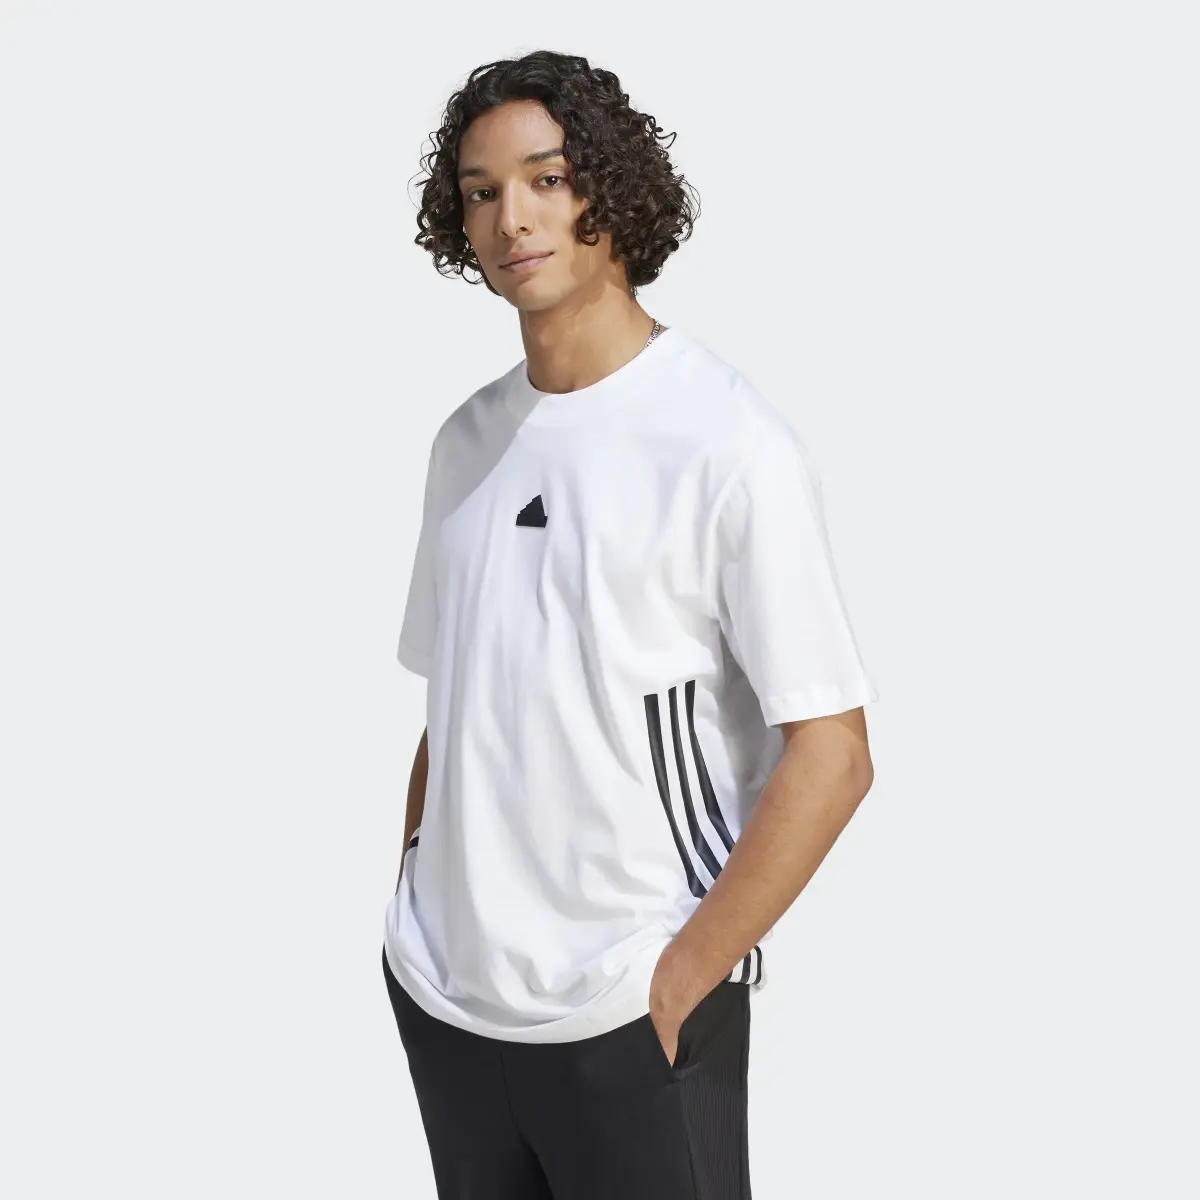 Adidas Future Icons 3-Stripes T-Shirt. 2